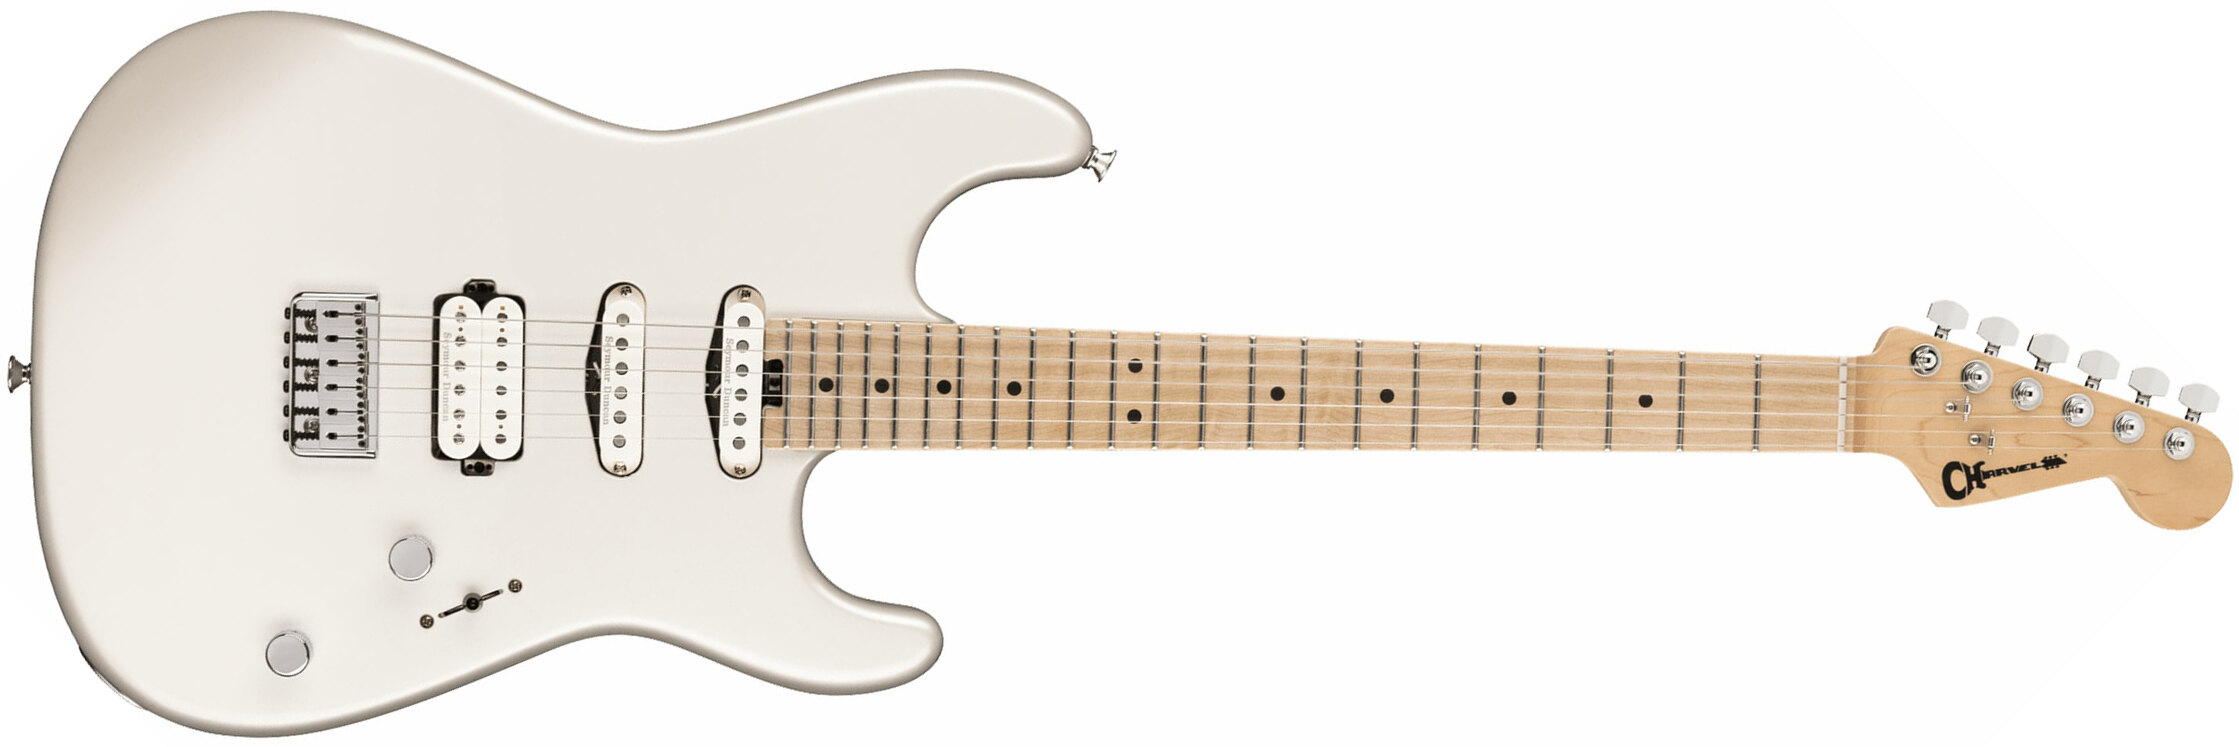 Charvel San Dimas Style 1 Hss Ht M Pro-mod Seymour Duncan Mn - Platinum Pearl - Str shape electric guitar - Main picture